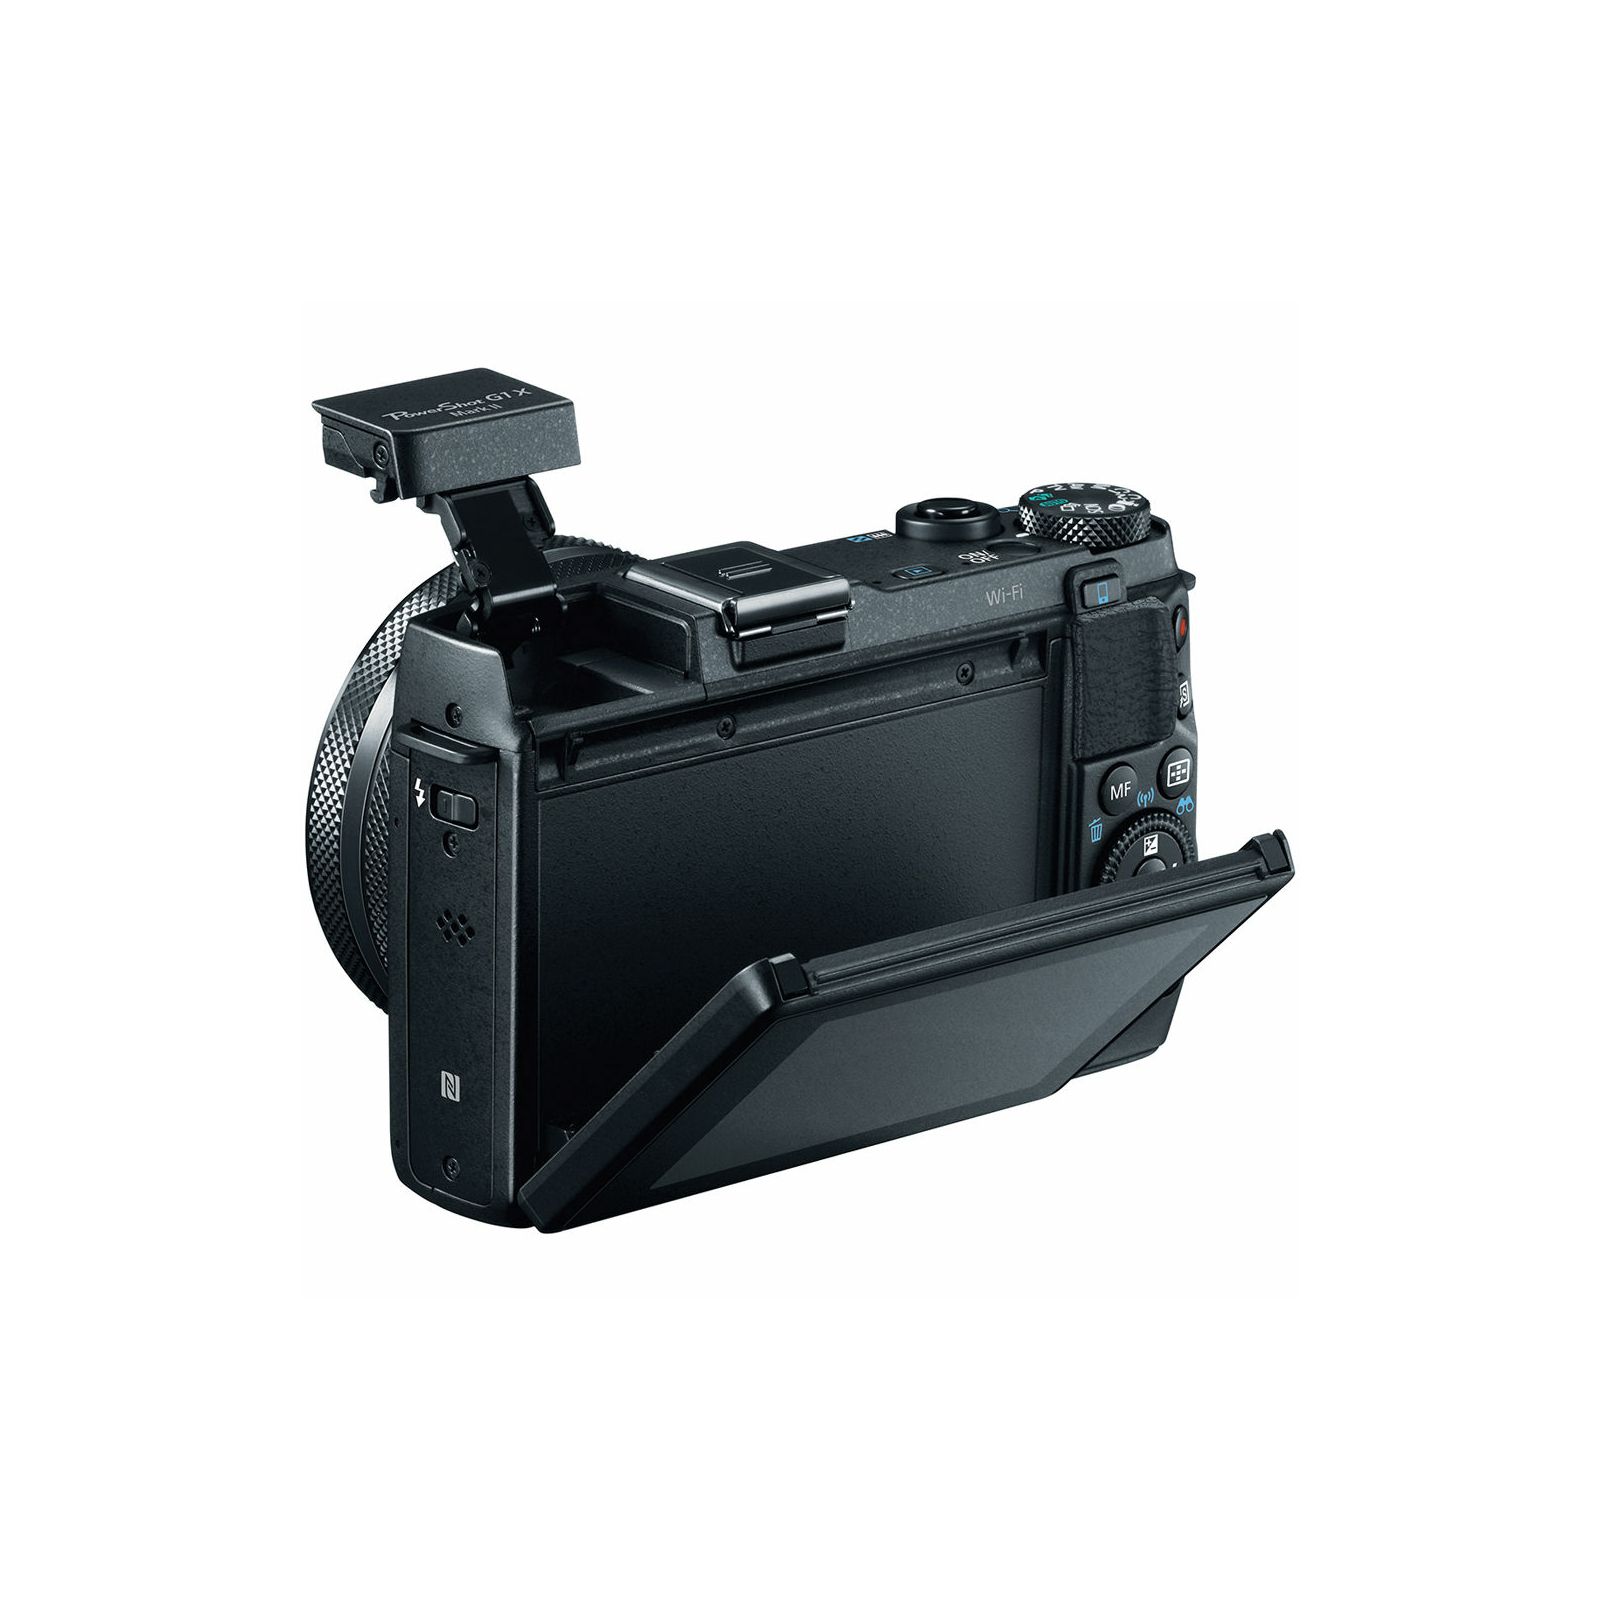 Canon Powershot G1x II kompaktni digitalni fotoaparat G1-x II  G1X MKII WiFi FullHD (9167B002AA) 